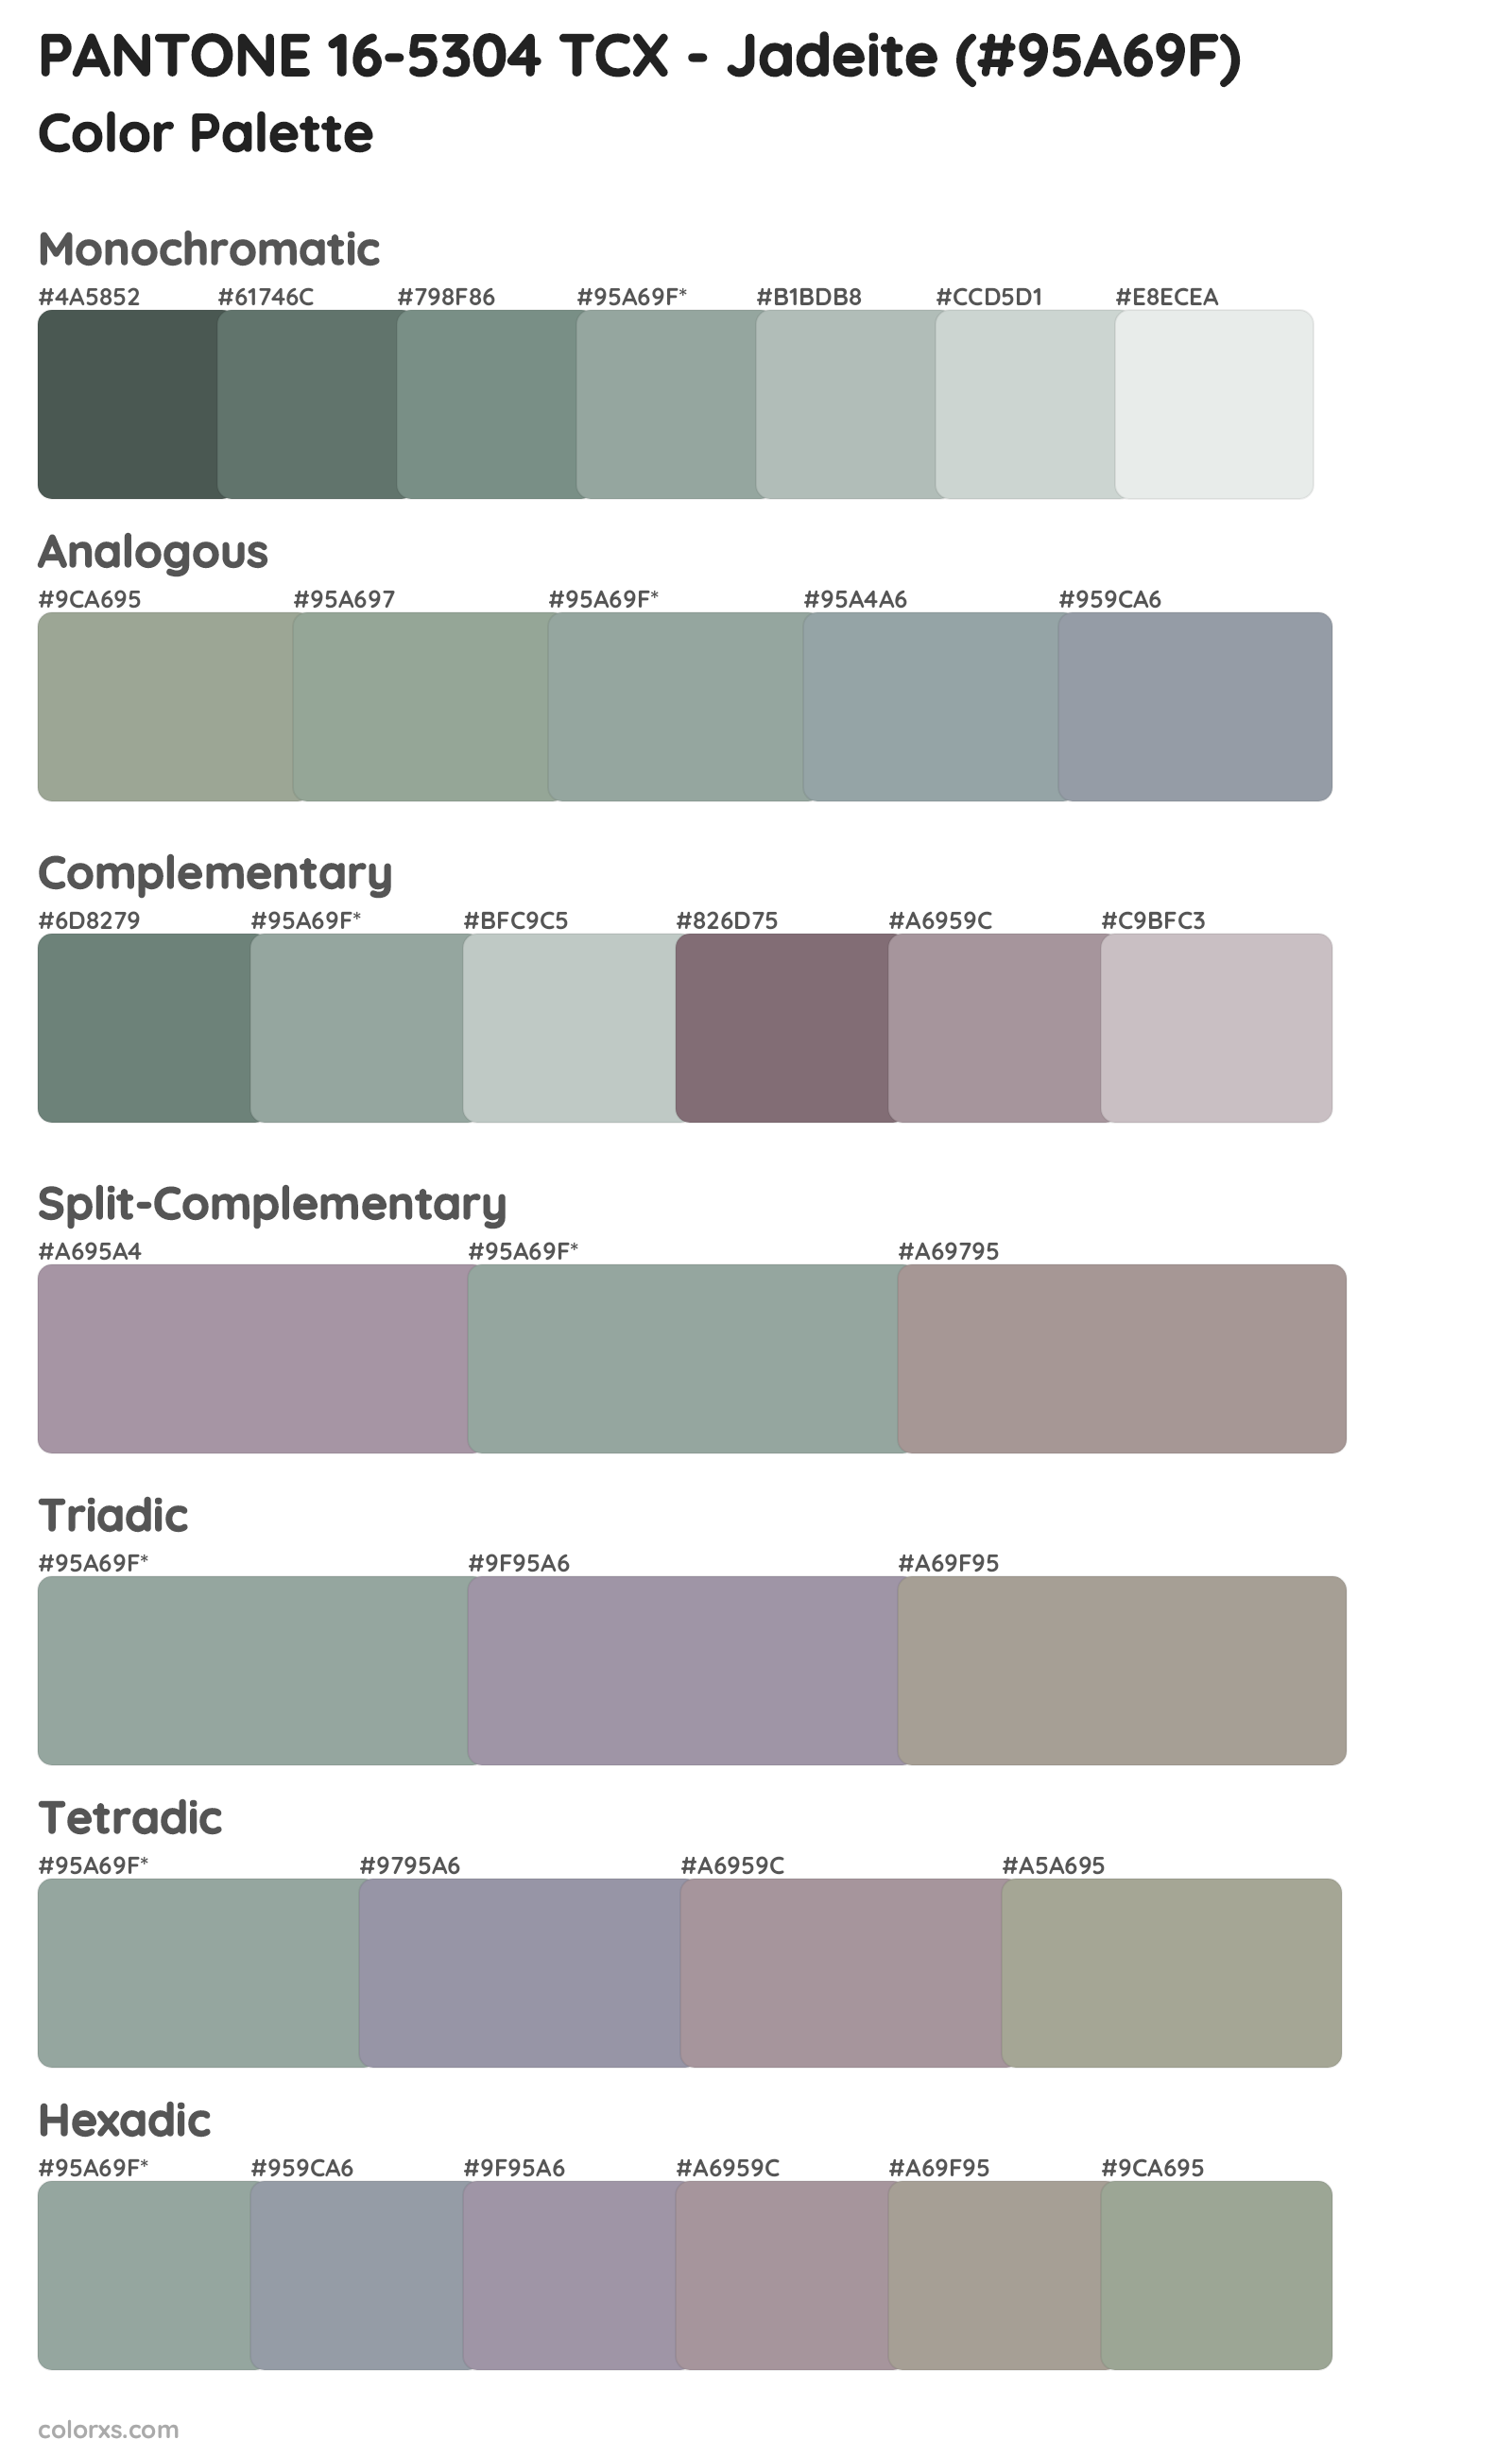 PANTONE 16-5304 TCX - Jadeite Color Scheme Palettes